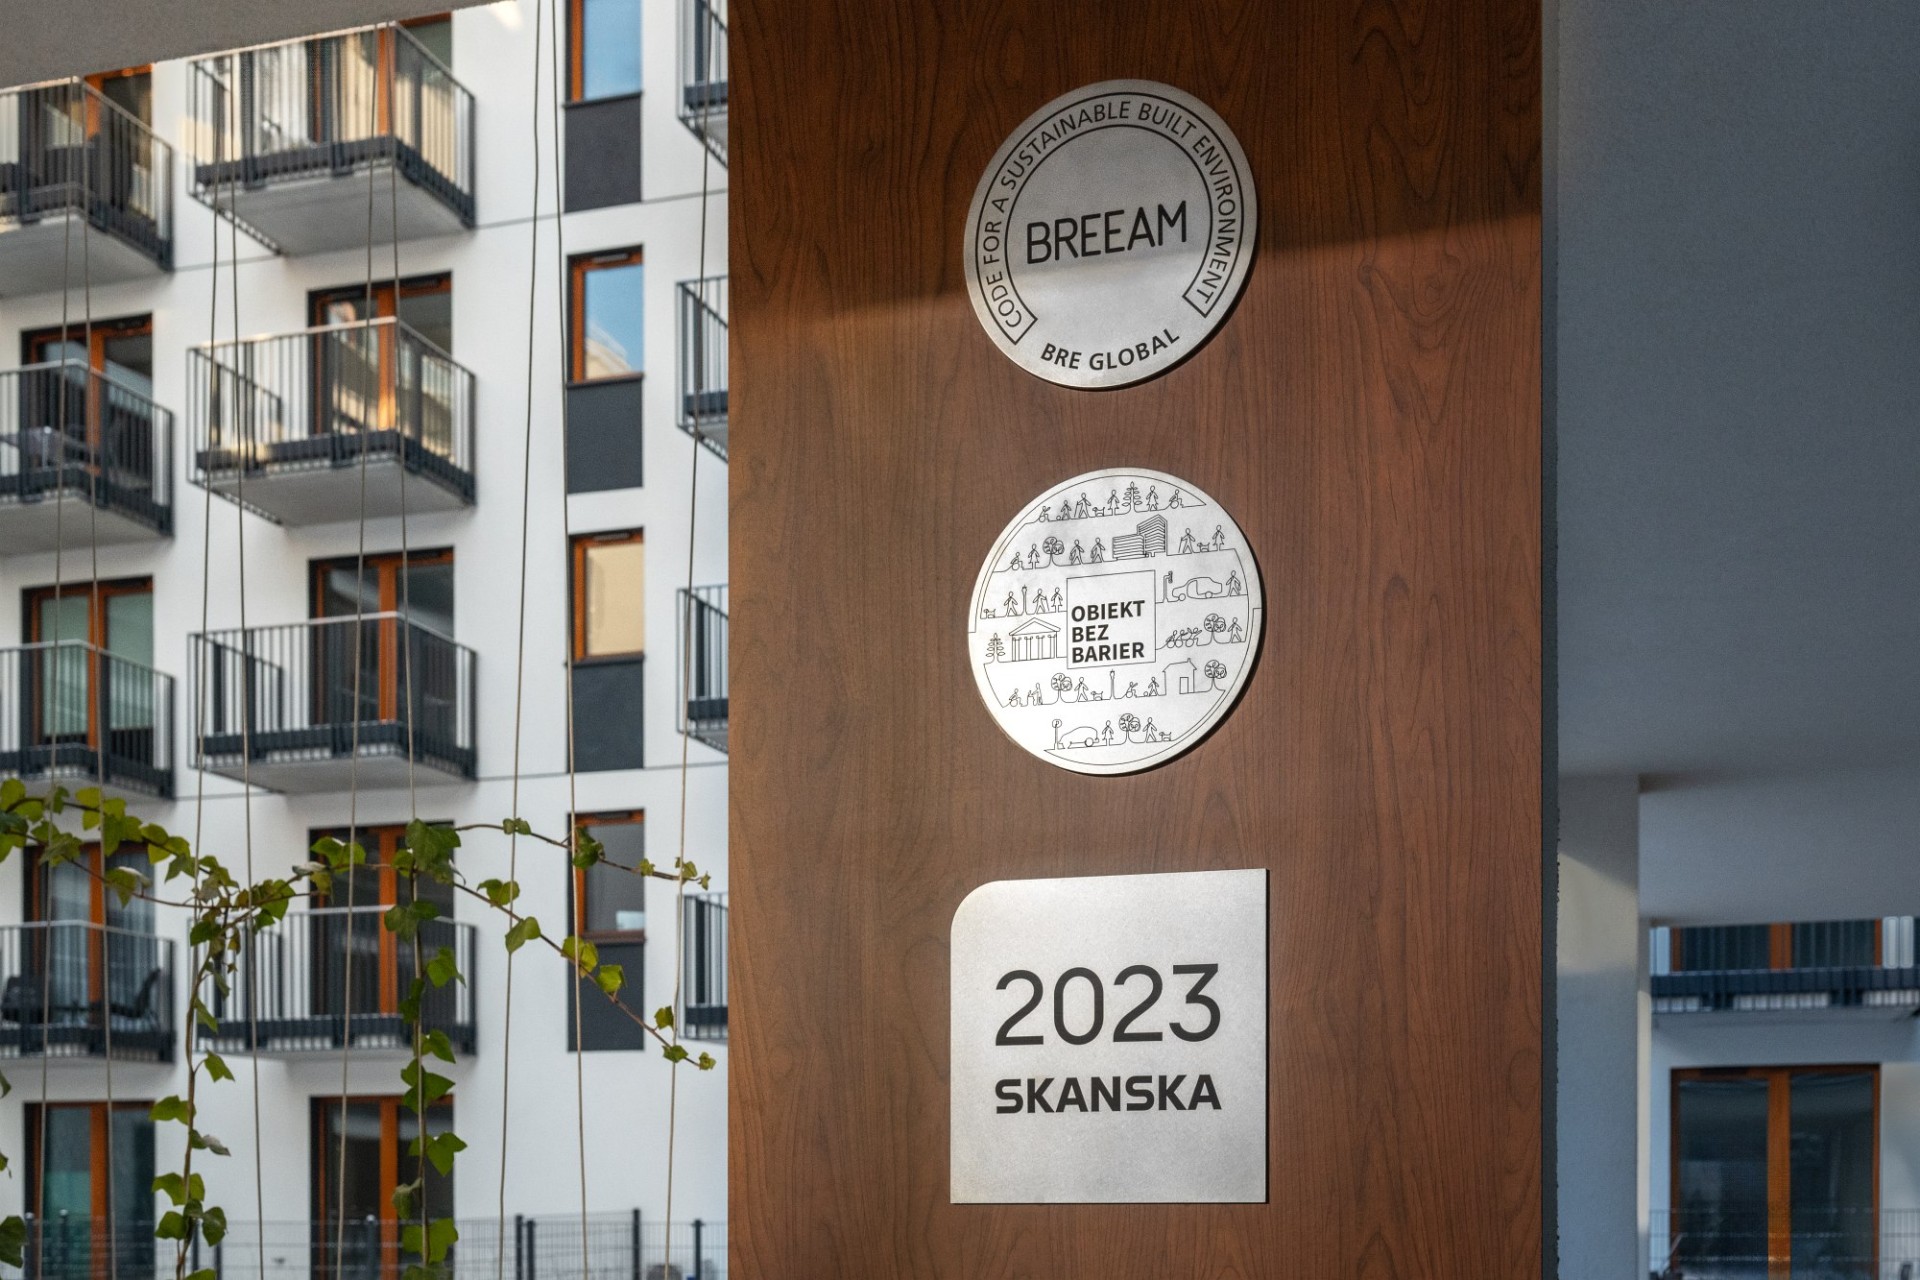 Drewniany fragment elewacji ze srebrnymi tablicami BREEAM, Obiekt bez barier, 2023 SKANSKA, w głębi elewacja apartamentowca z balkonami.